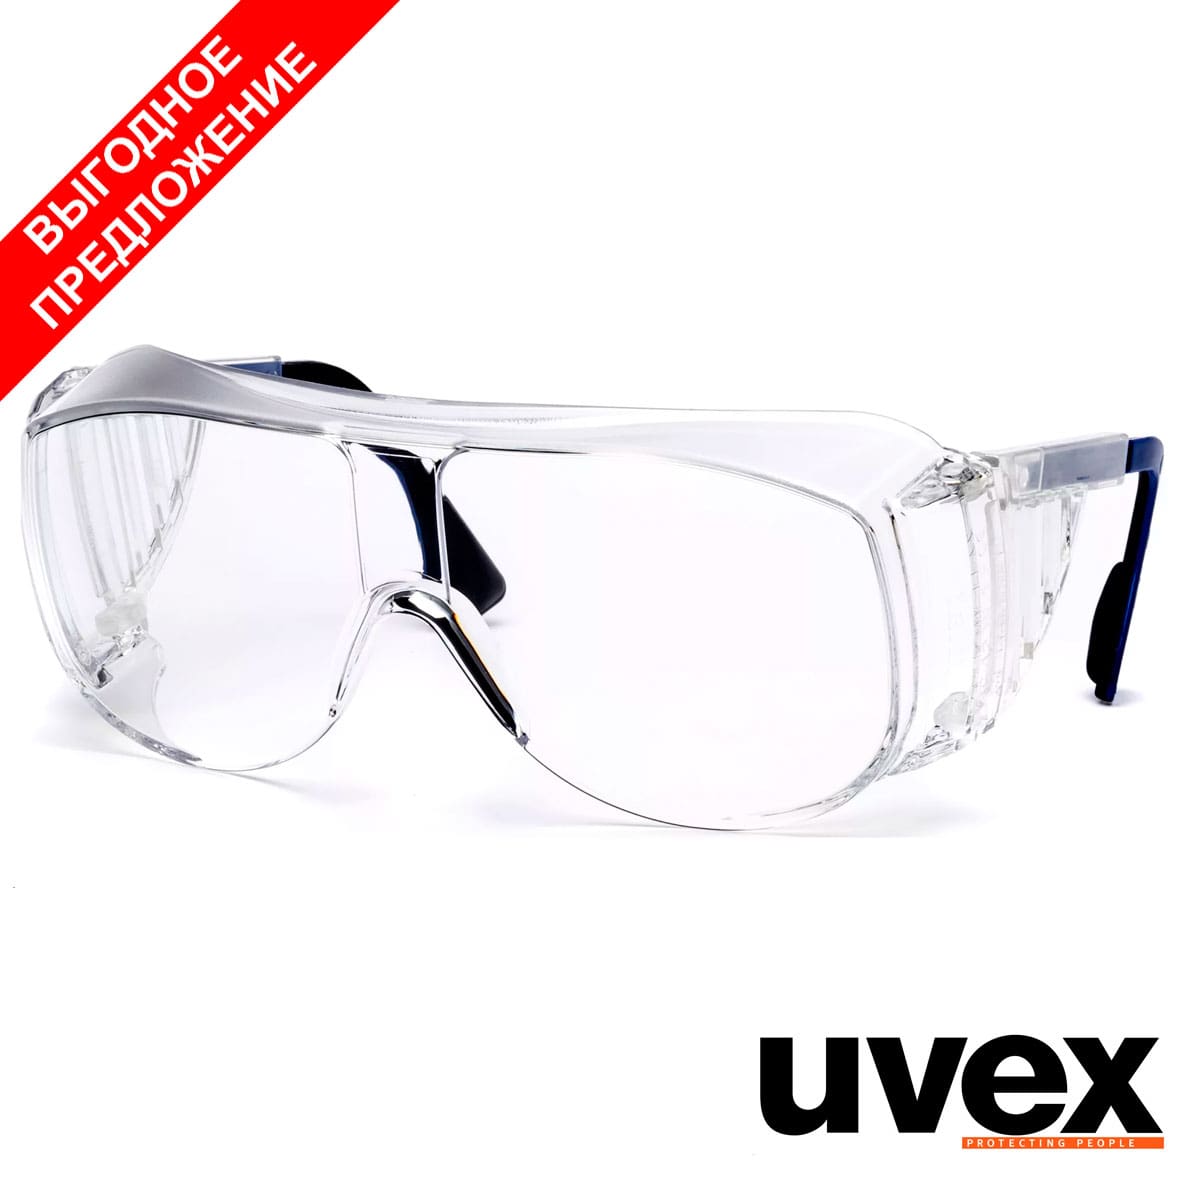 Очки открытые UVEX Визитор 9161.005 линза: Оптидур, прозрачная, 2-1,2; оправа: прозрачная с синим